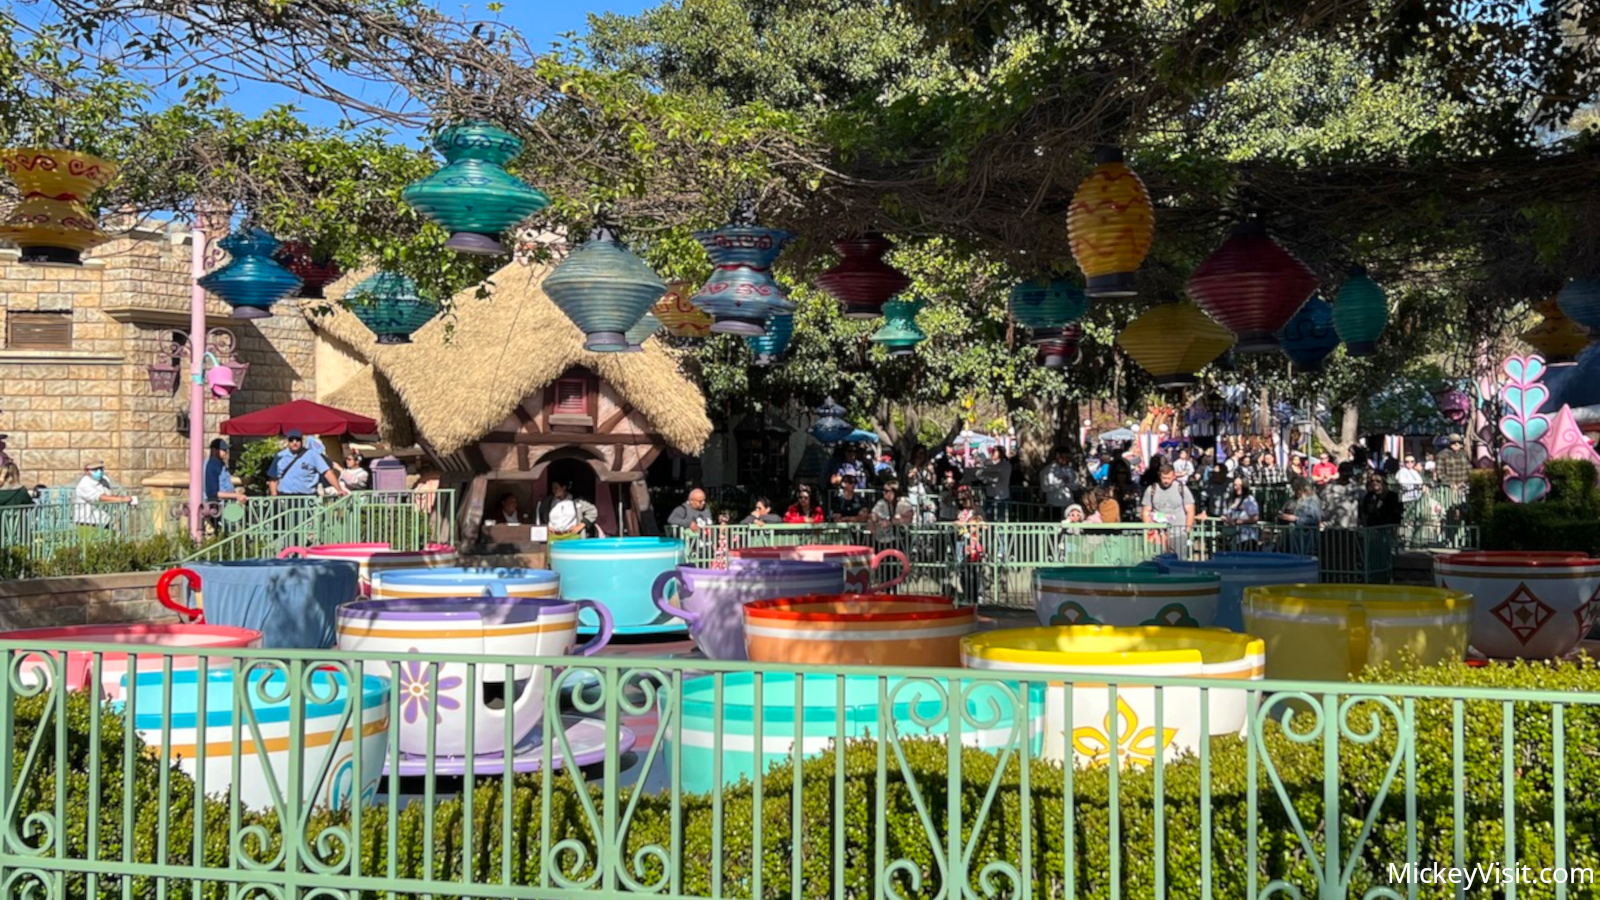 Teacups in summer at Disneyland